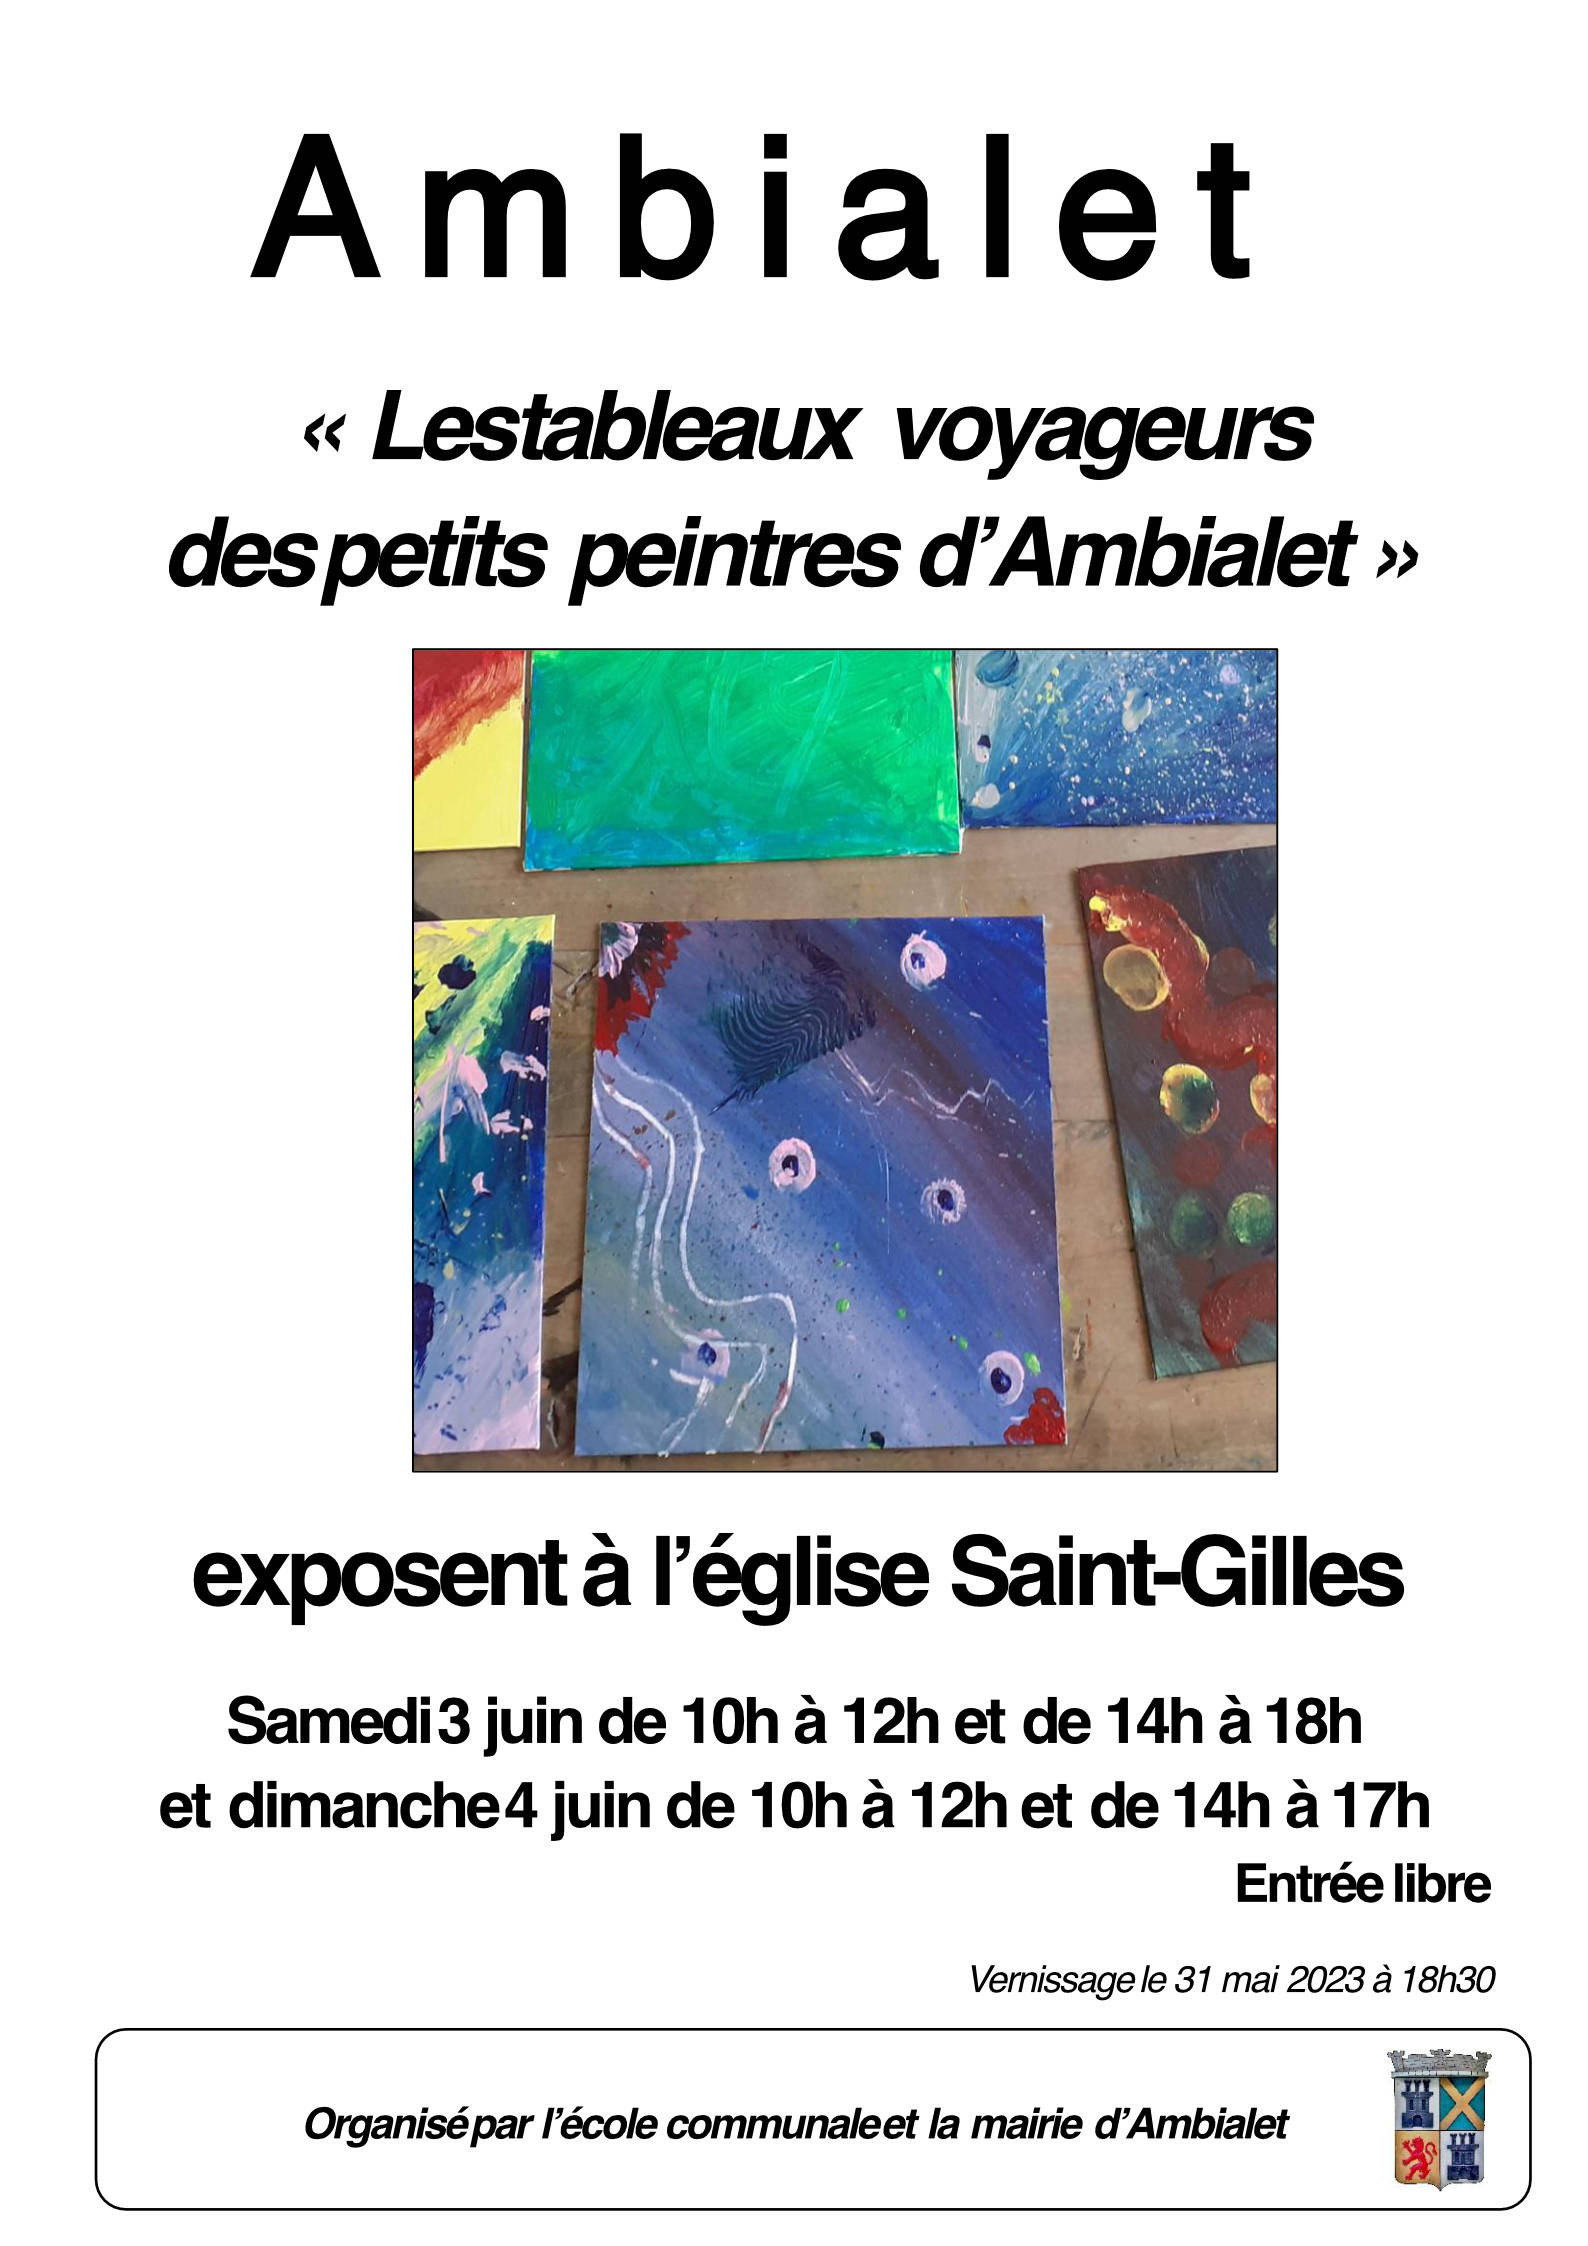 AMBIALET : Les écoliers Ambialetois exposent leurs peintures à Saint-Gilles